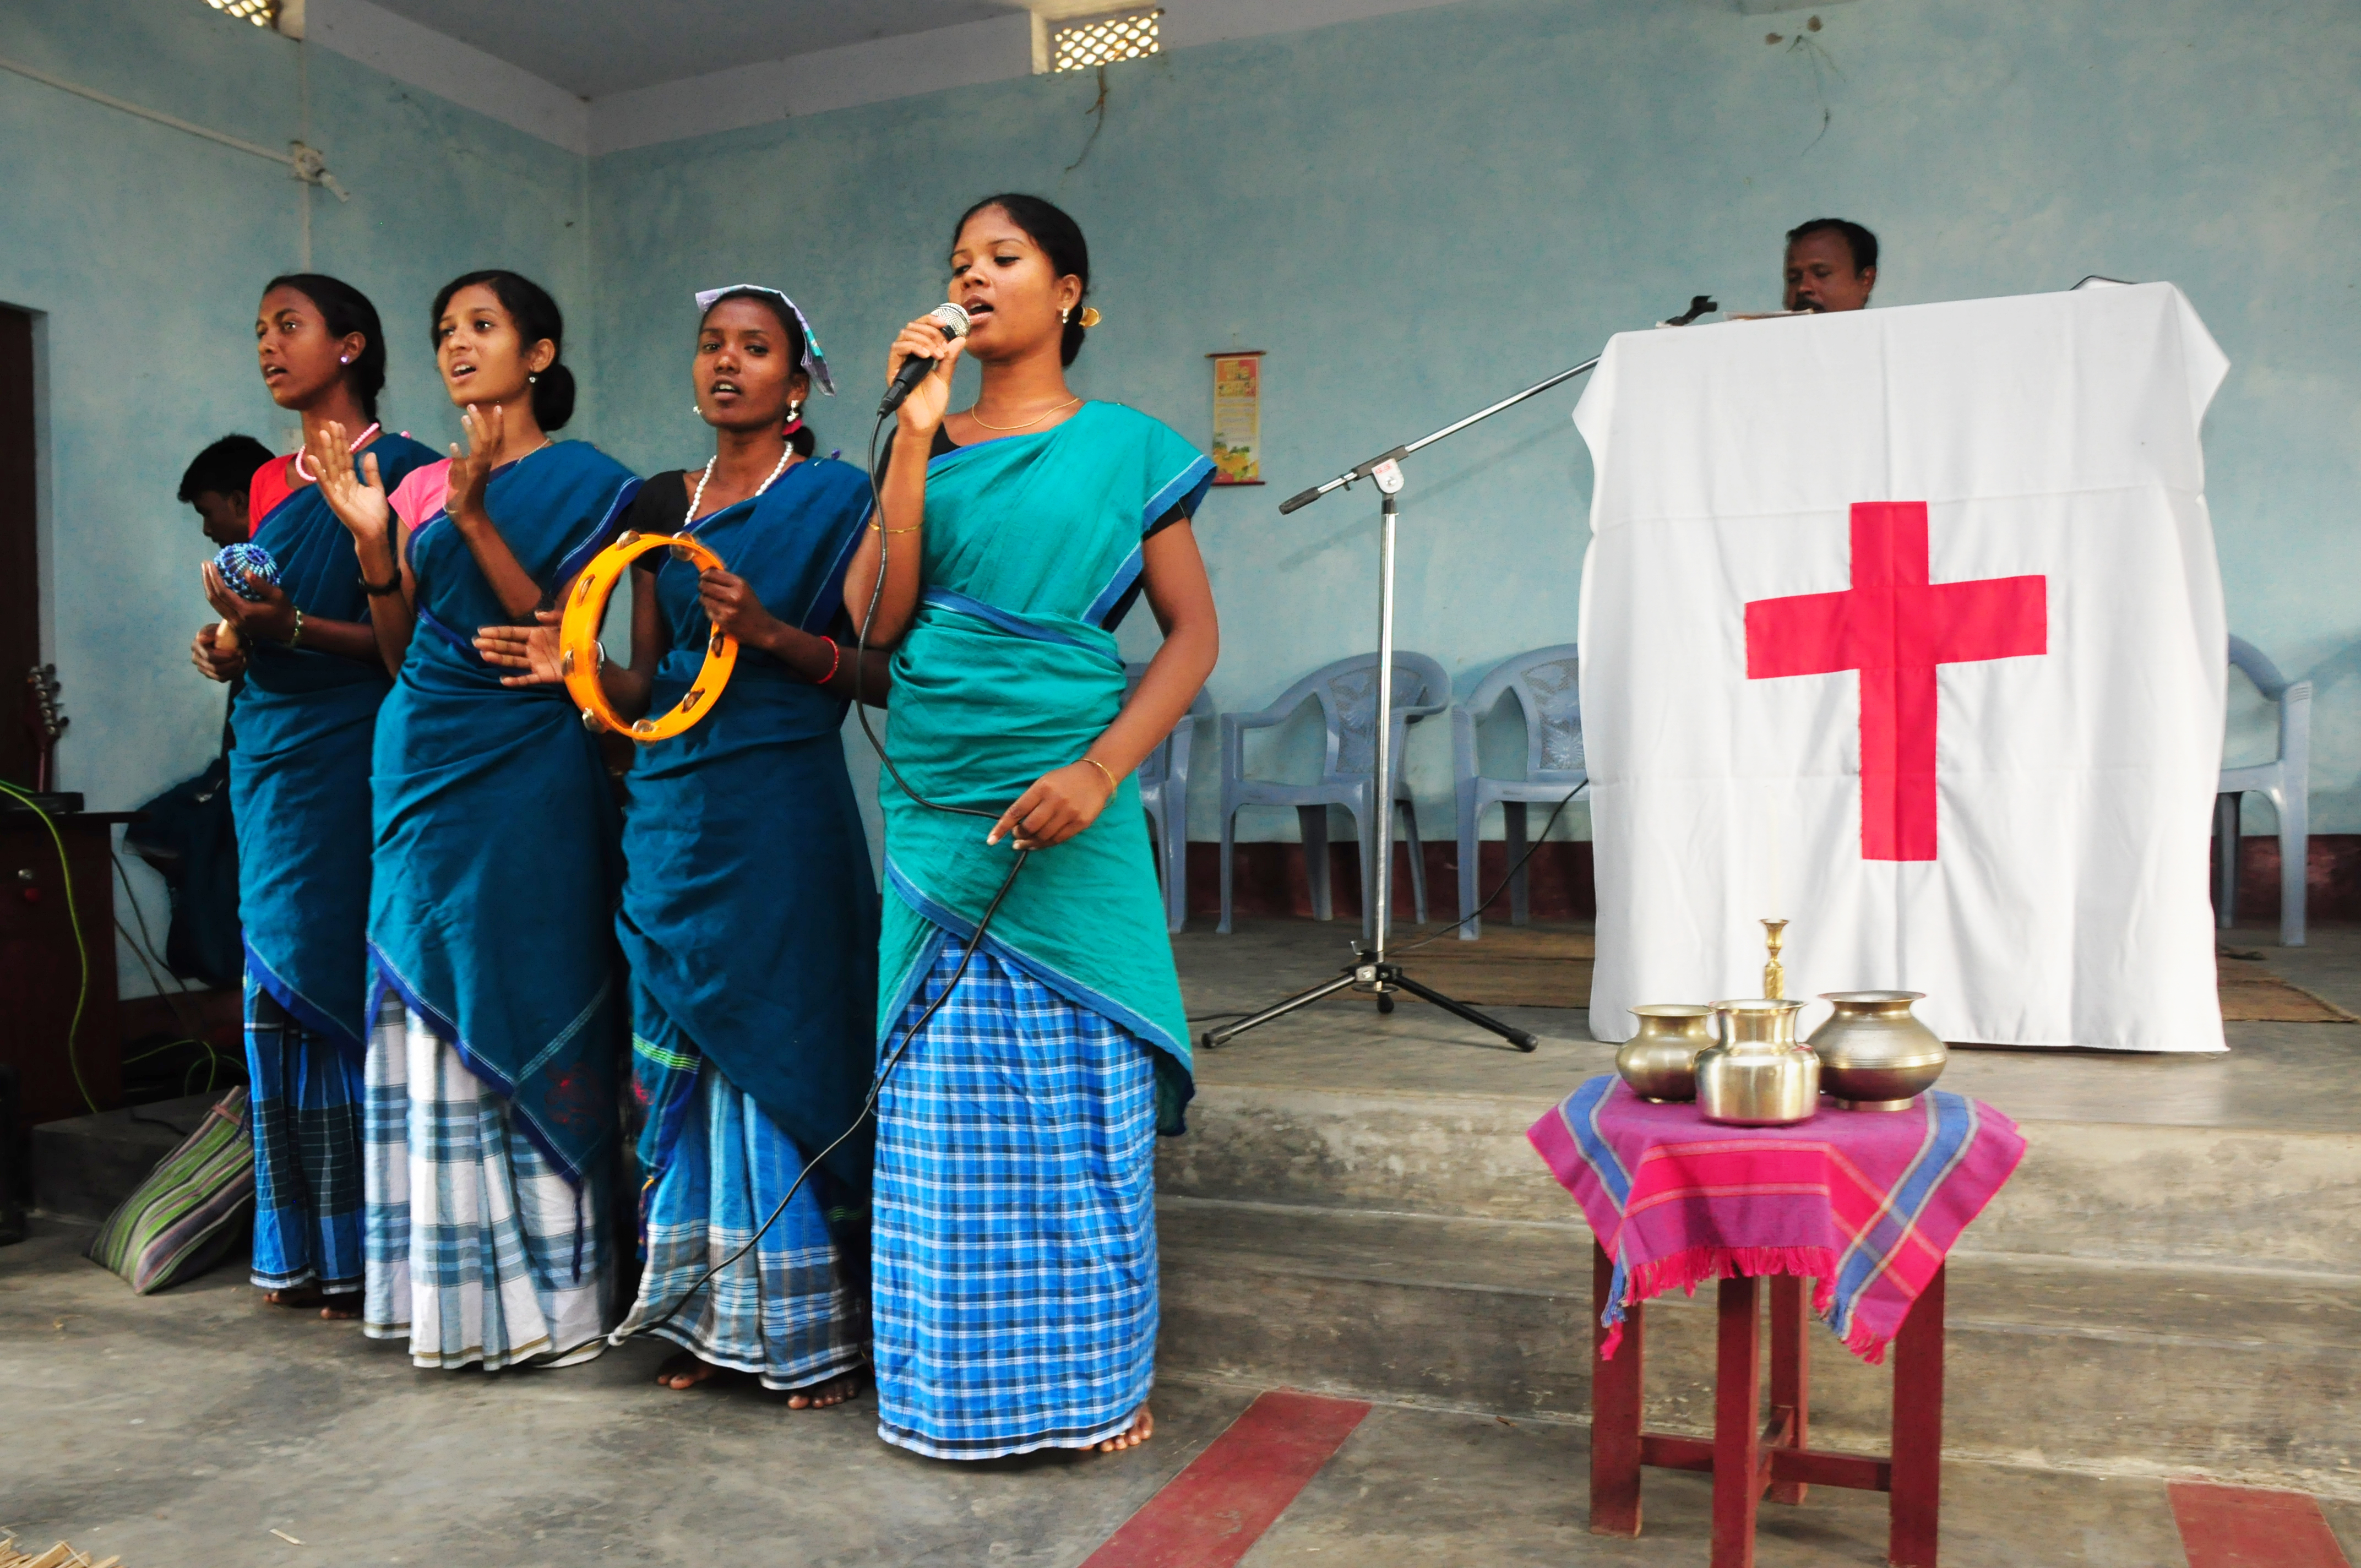 Fyra församlingsmedlemmar sjunger i gudstjänsten i Nepals lilla lutherska kyrka i södra Nepal. De flesta av kyrkans medlemmar är santaler